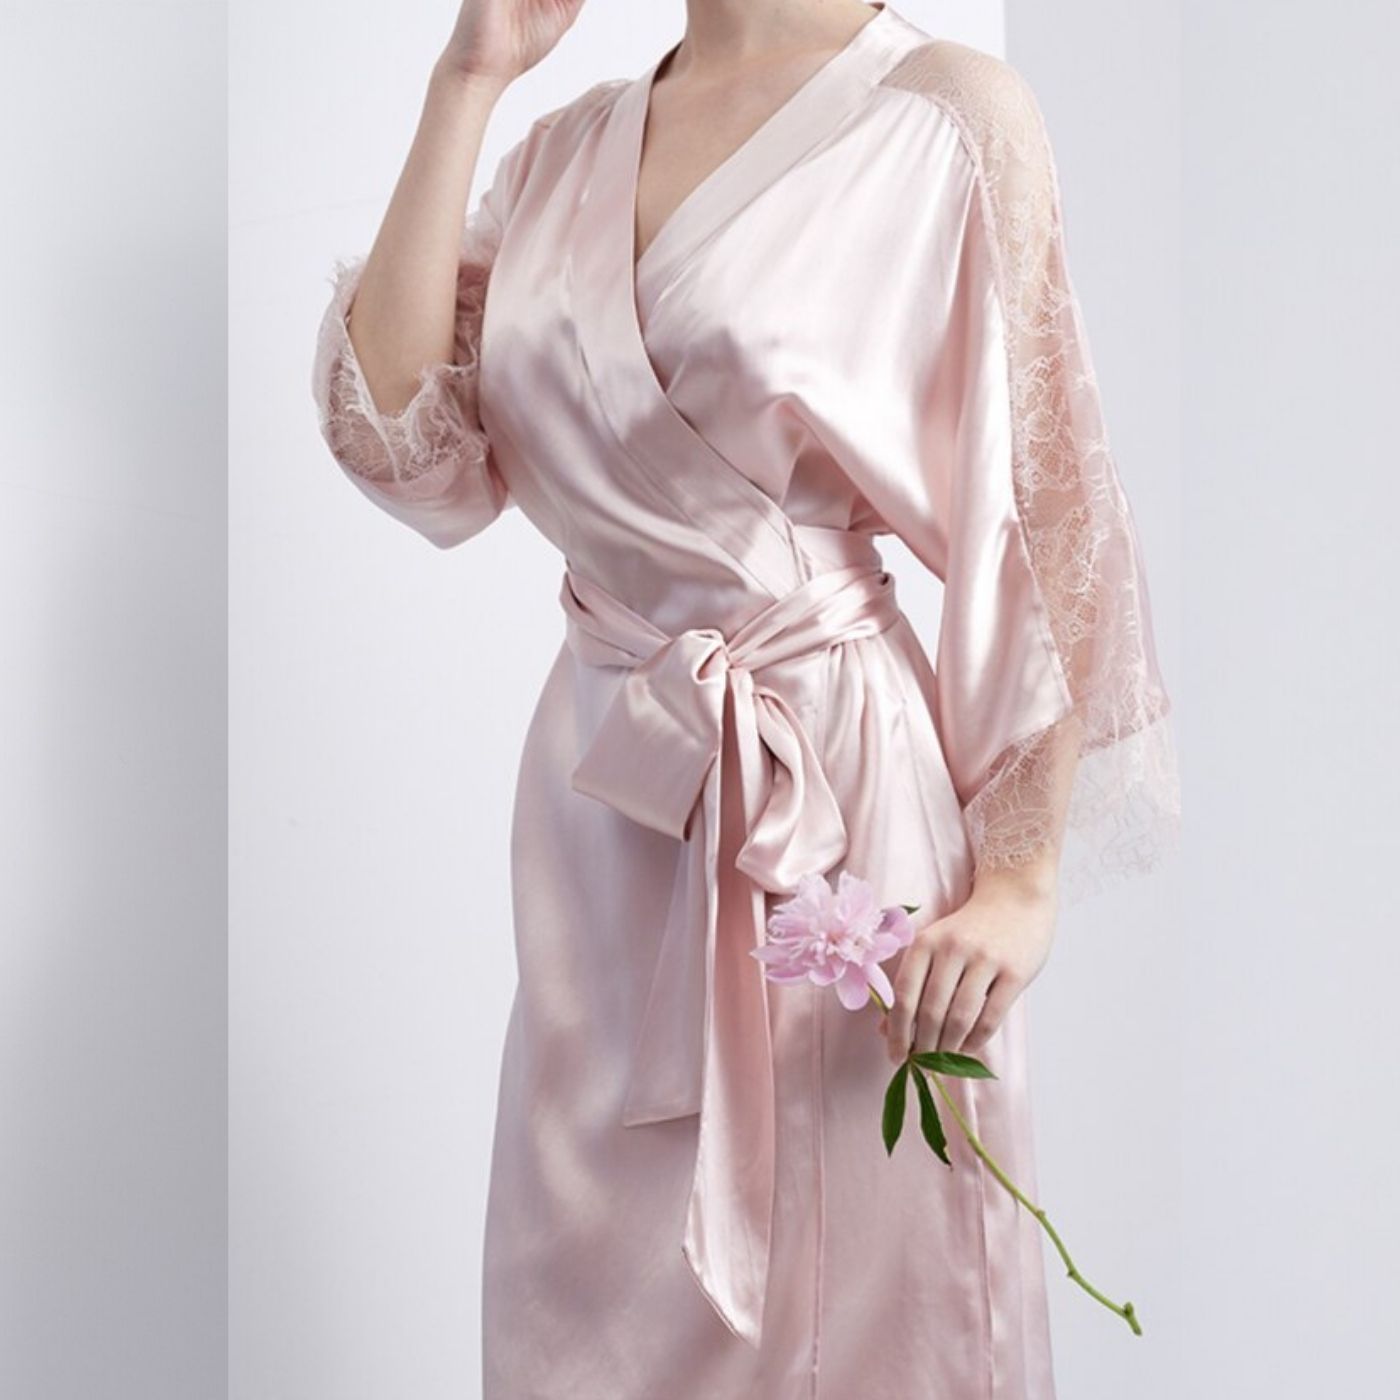 100% Pure Real Mulberry Silk Robe Nightwear Sleepwear Loungewear Luxury Pyjamas pajamas Pink Blue Lace Sleeves Mid length UK US France Spain Belgium